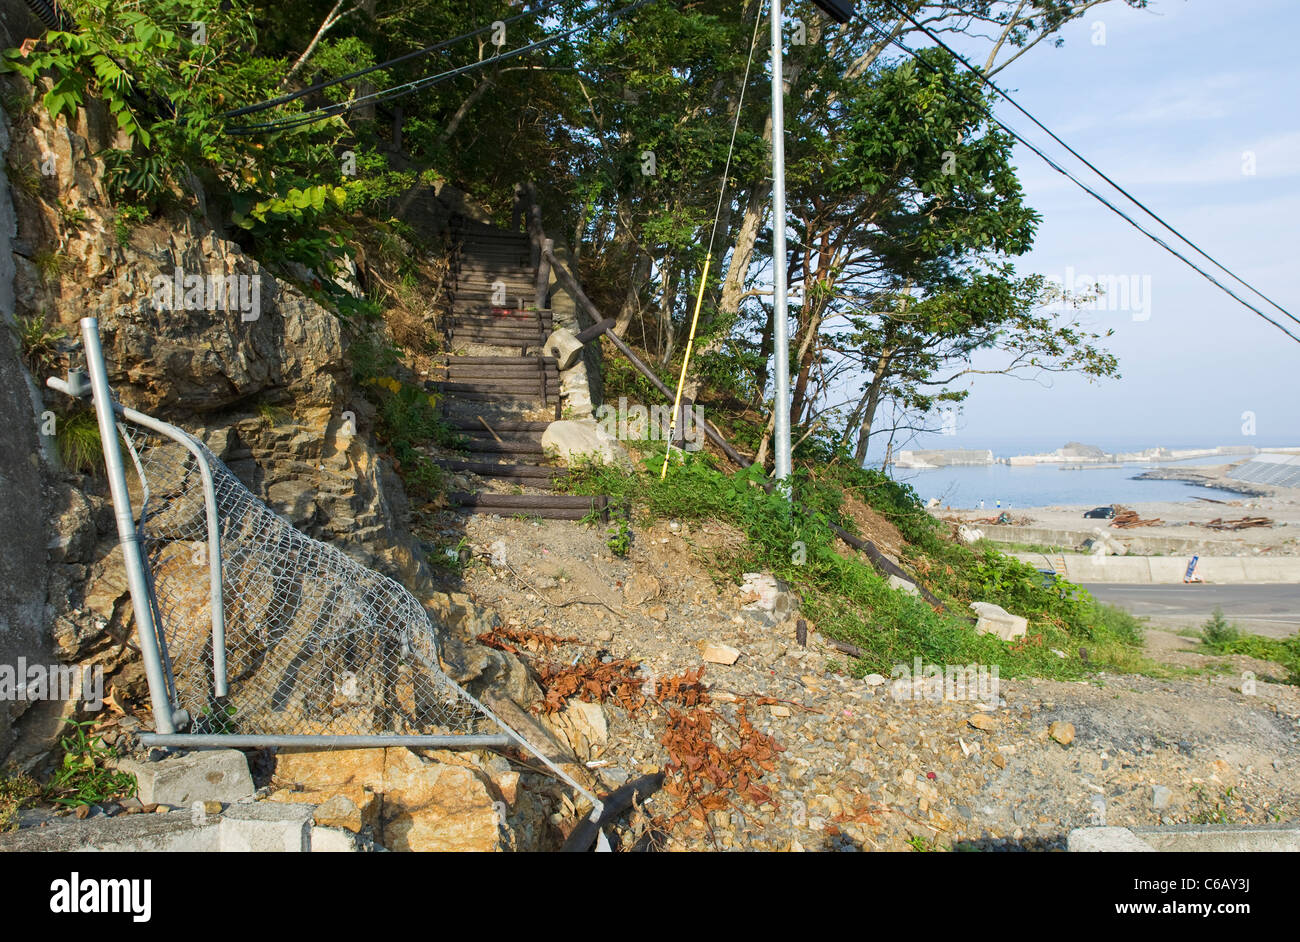 Escaliers, garde-corps et clôture sur le flanc d'une montagne, montrant les dommages causés par un tsunami Banque D'Images